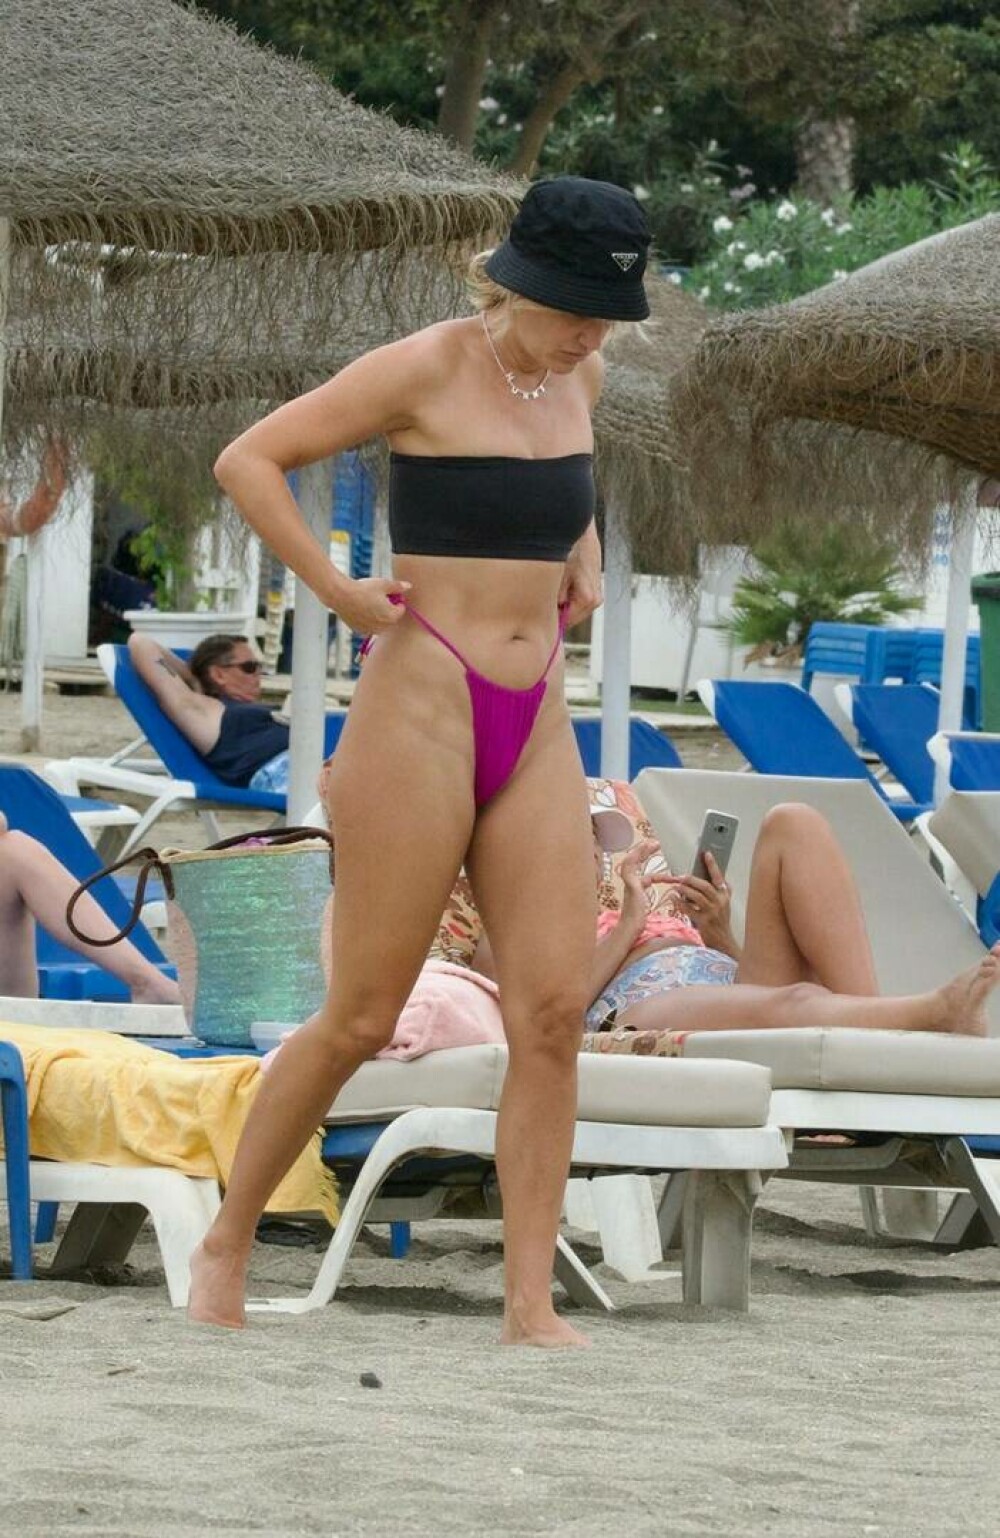 Ashley Roberts, fosta membră „The Pussycat Dolls”, și-a arătat fizicul tonifiat pe o plajă din Marbella | GALERIE FOTO - Imaginea 11